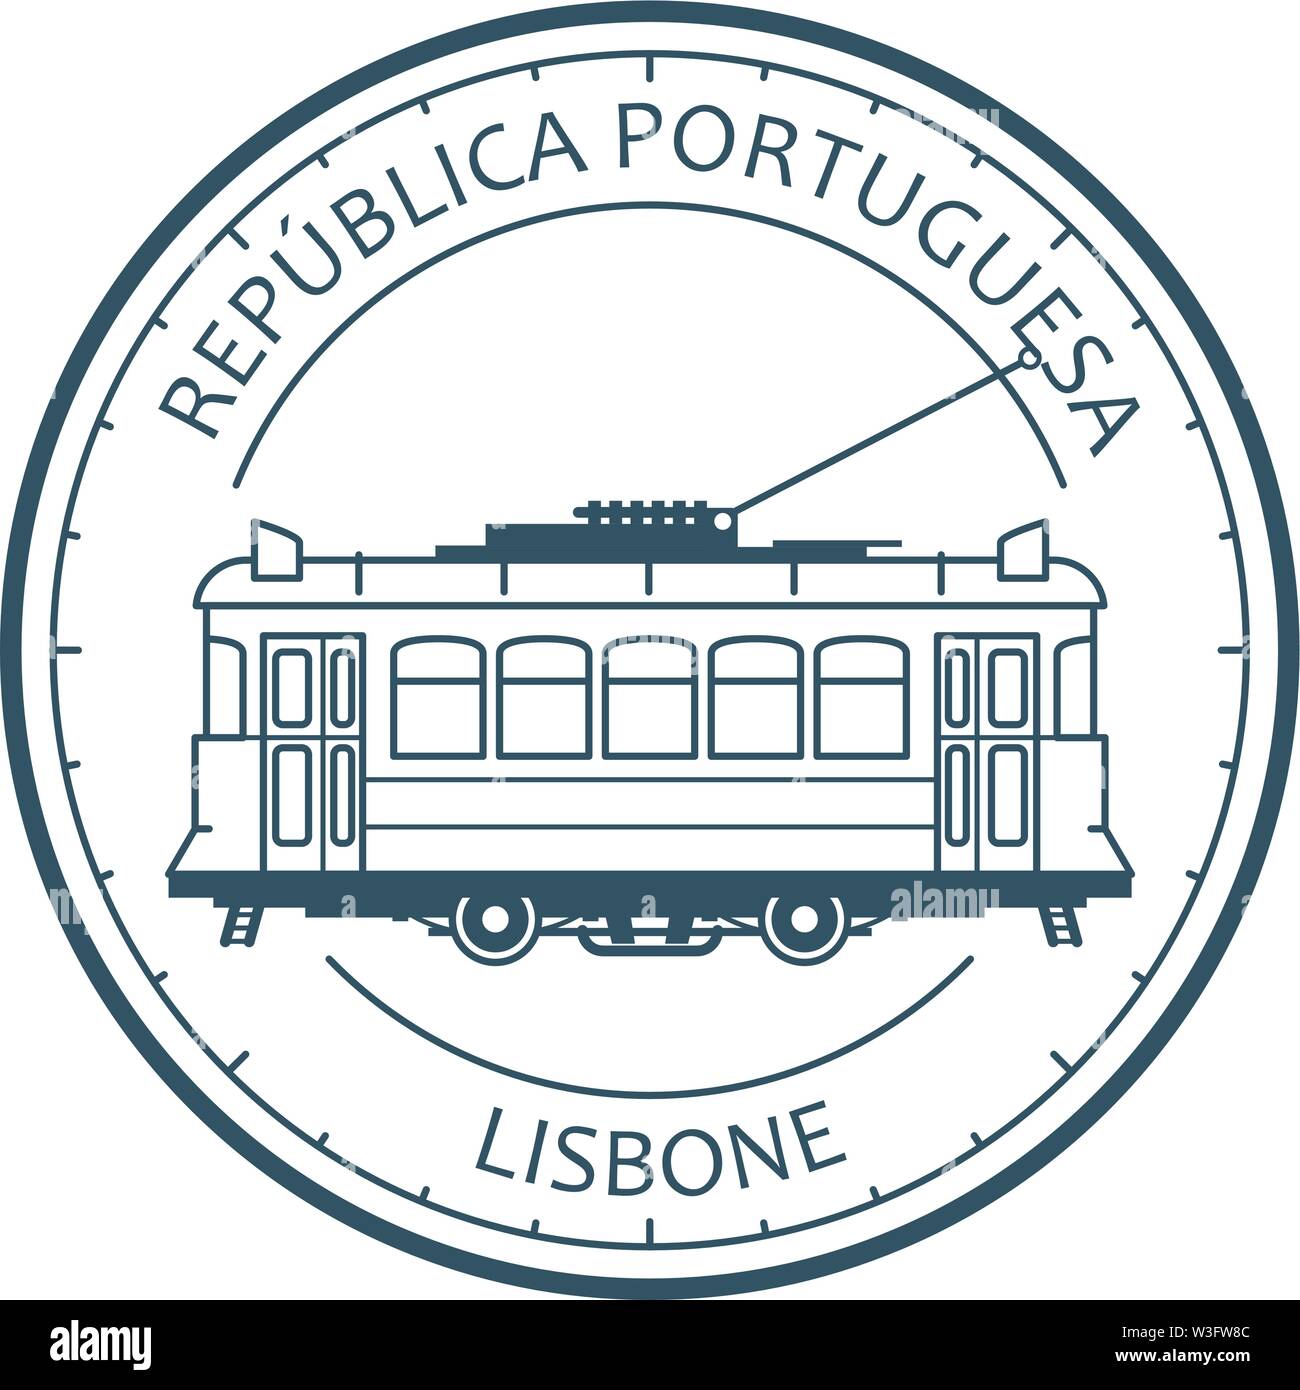 Vintage tranvía - tranvía en Lisboa, Portugal, el contorno del emblema de tranvía retro Ilustración del Vector